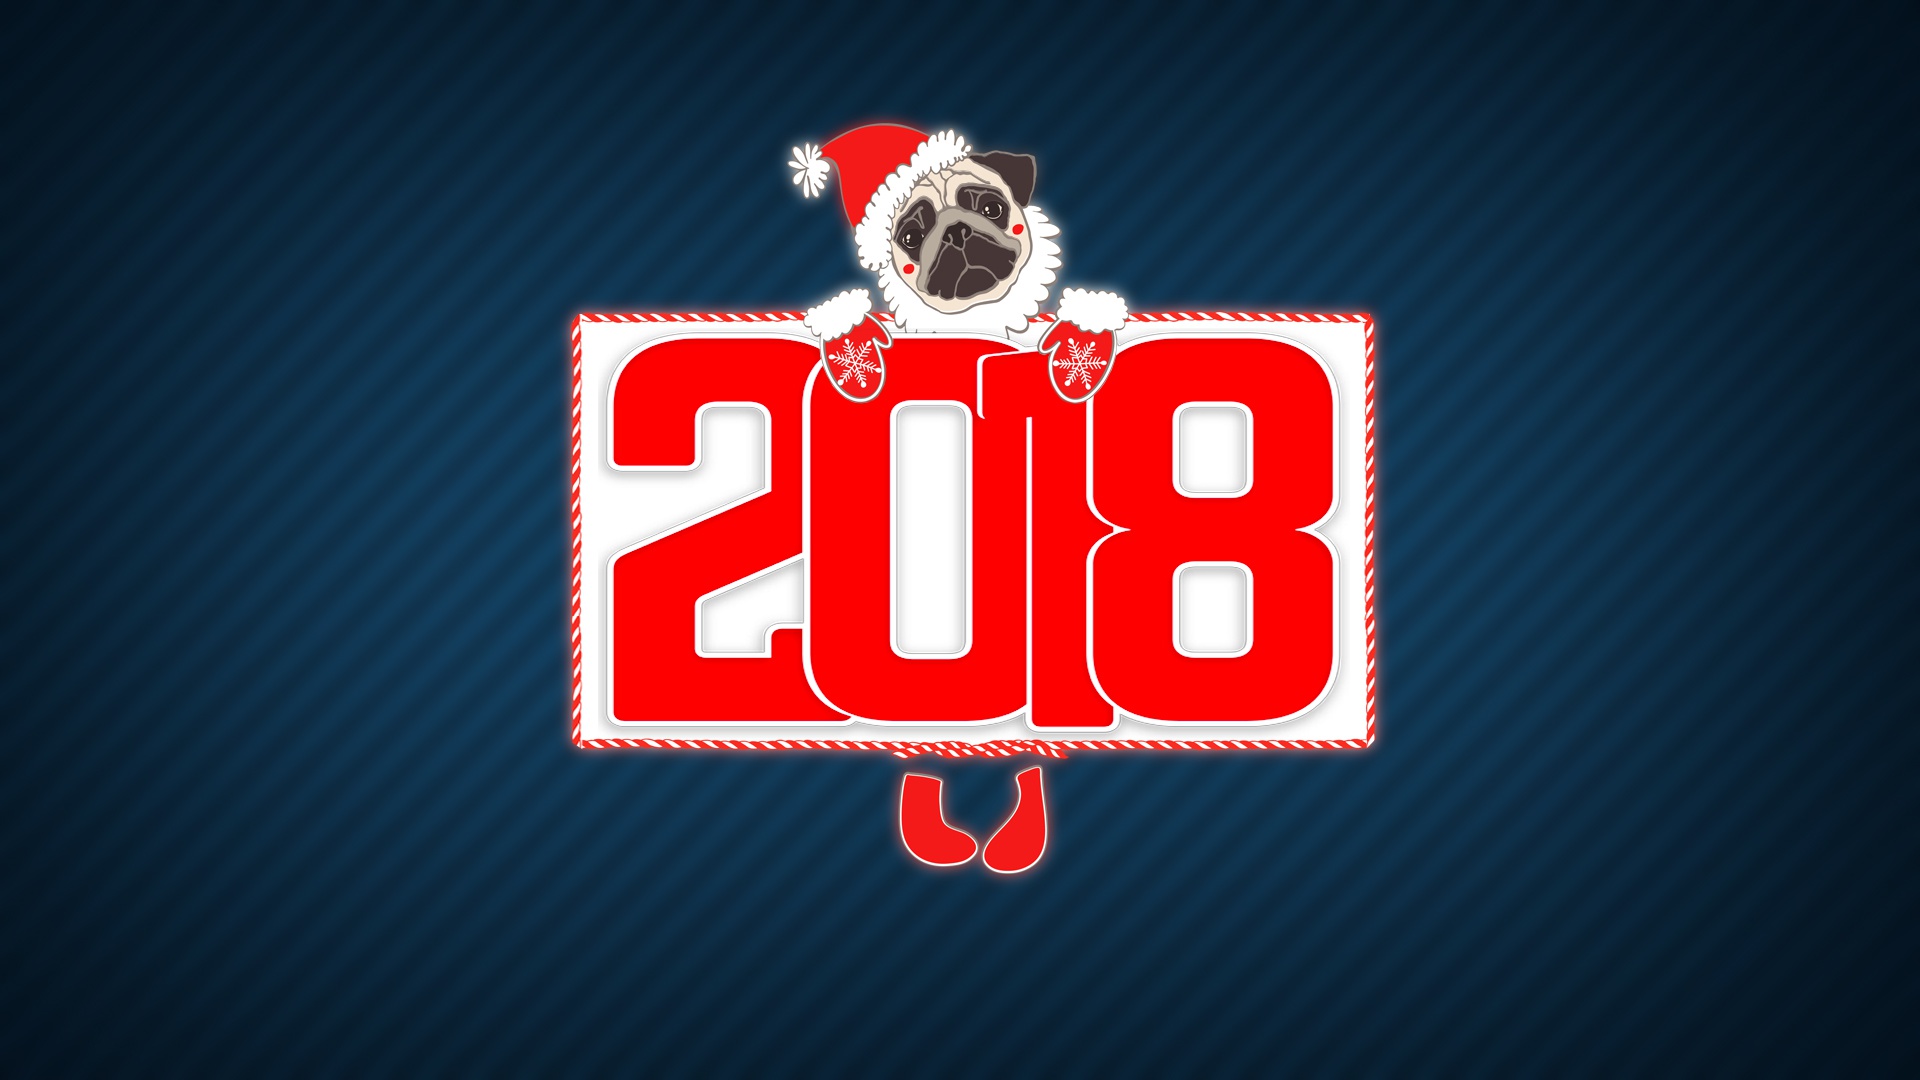 极简主义2018年圣诞节新年快乐狗年壁纸